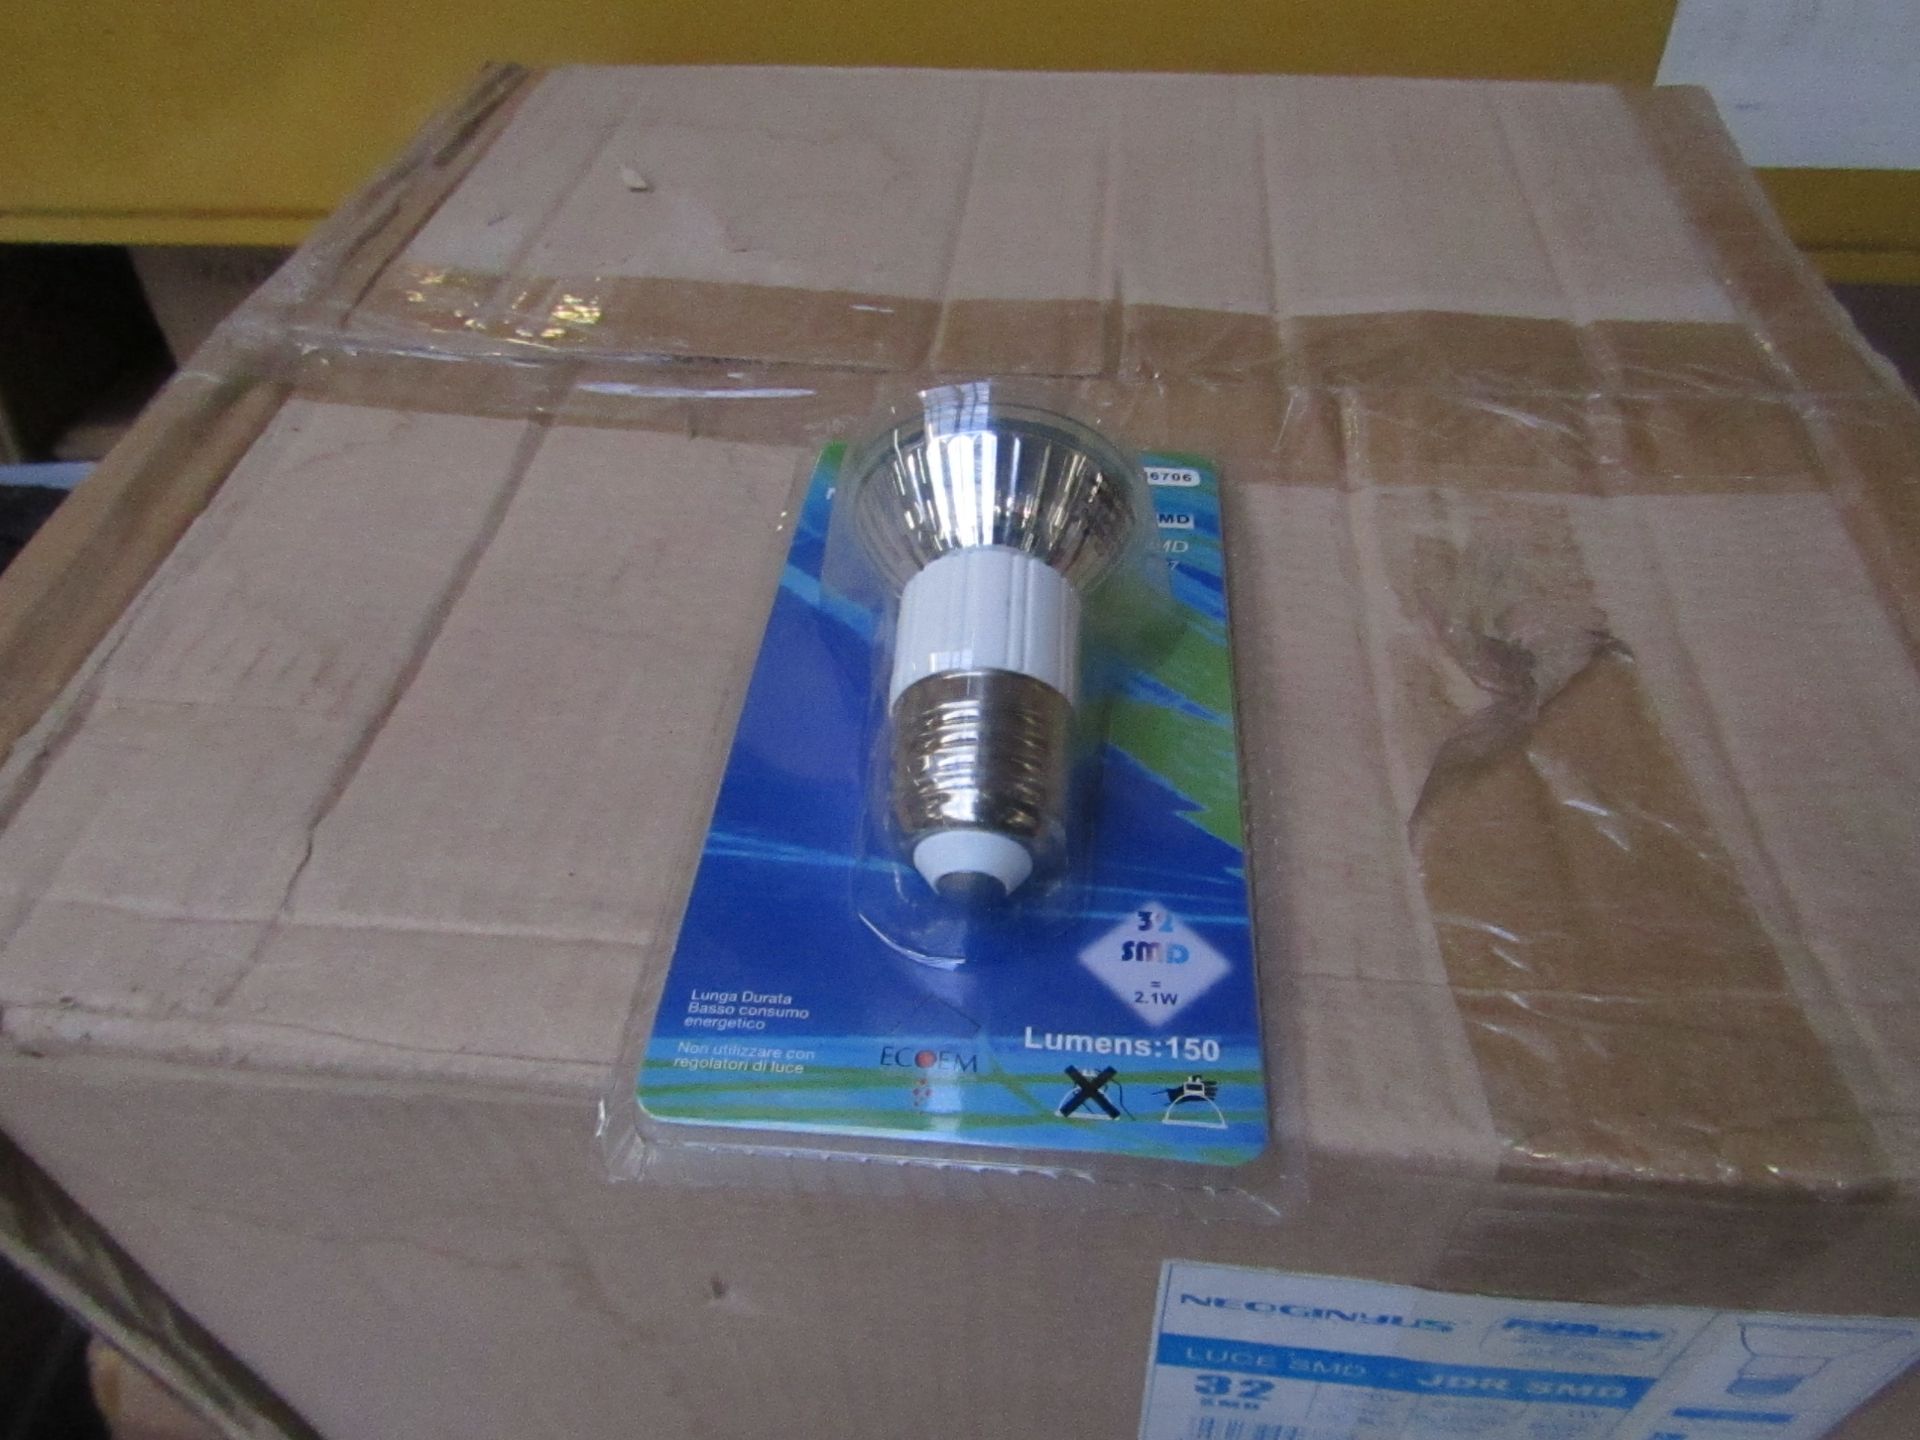 12X Neoginyus Style Light Bulb E27 220V new & boxed